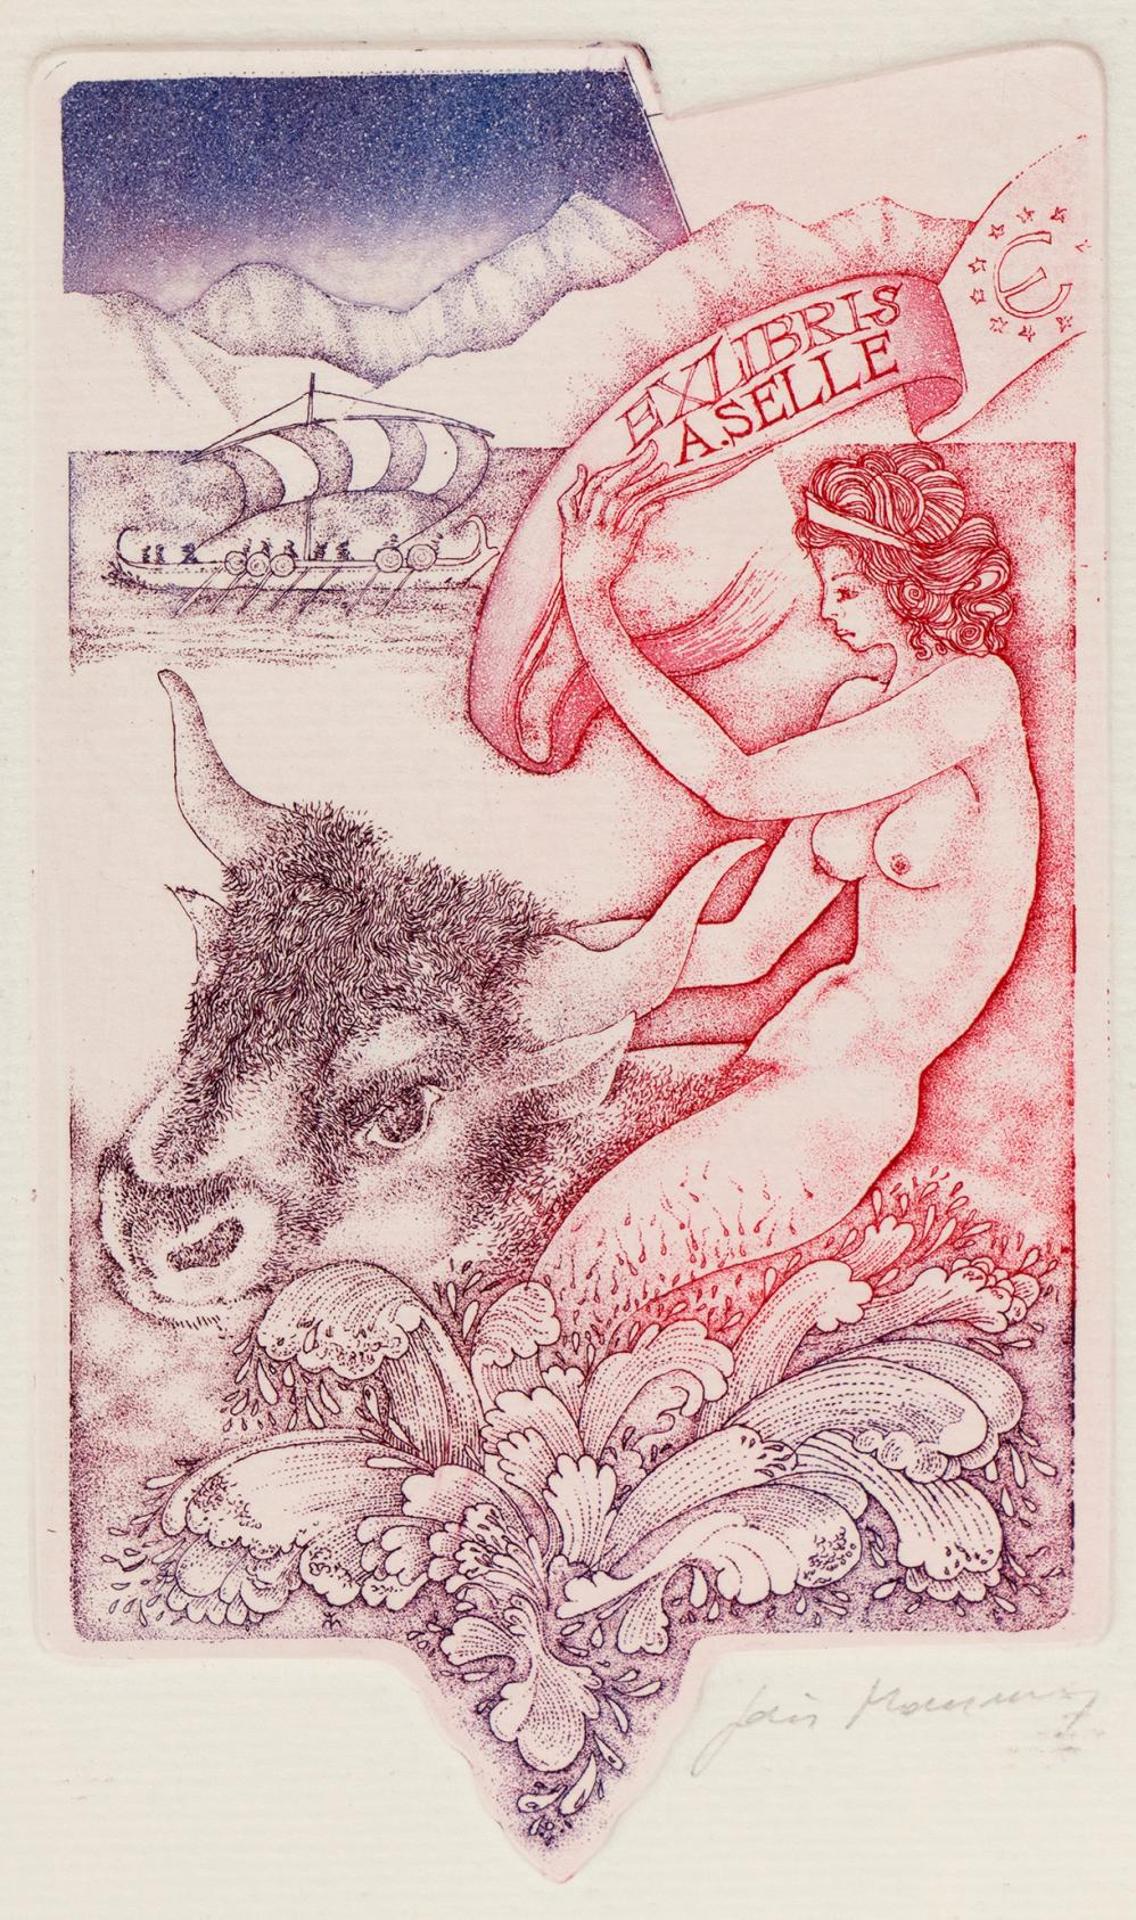 Joris Mommen (1942) - Europa and the Bull